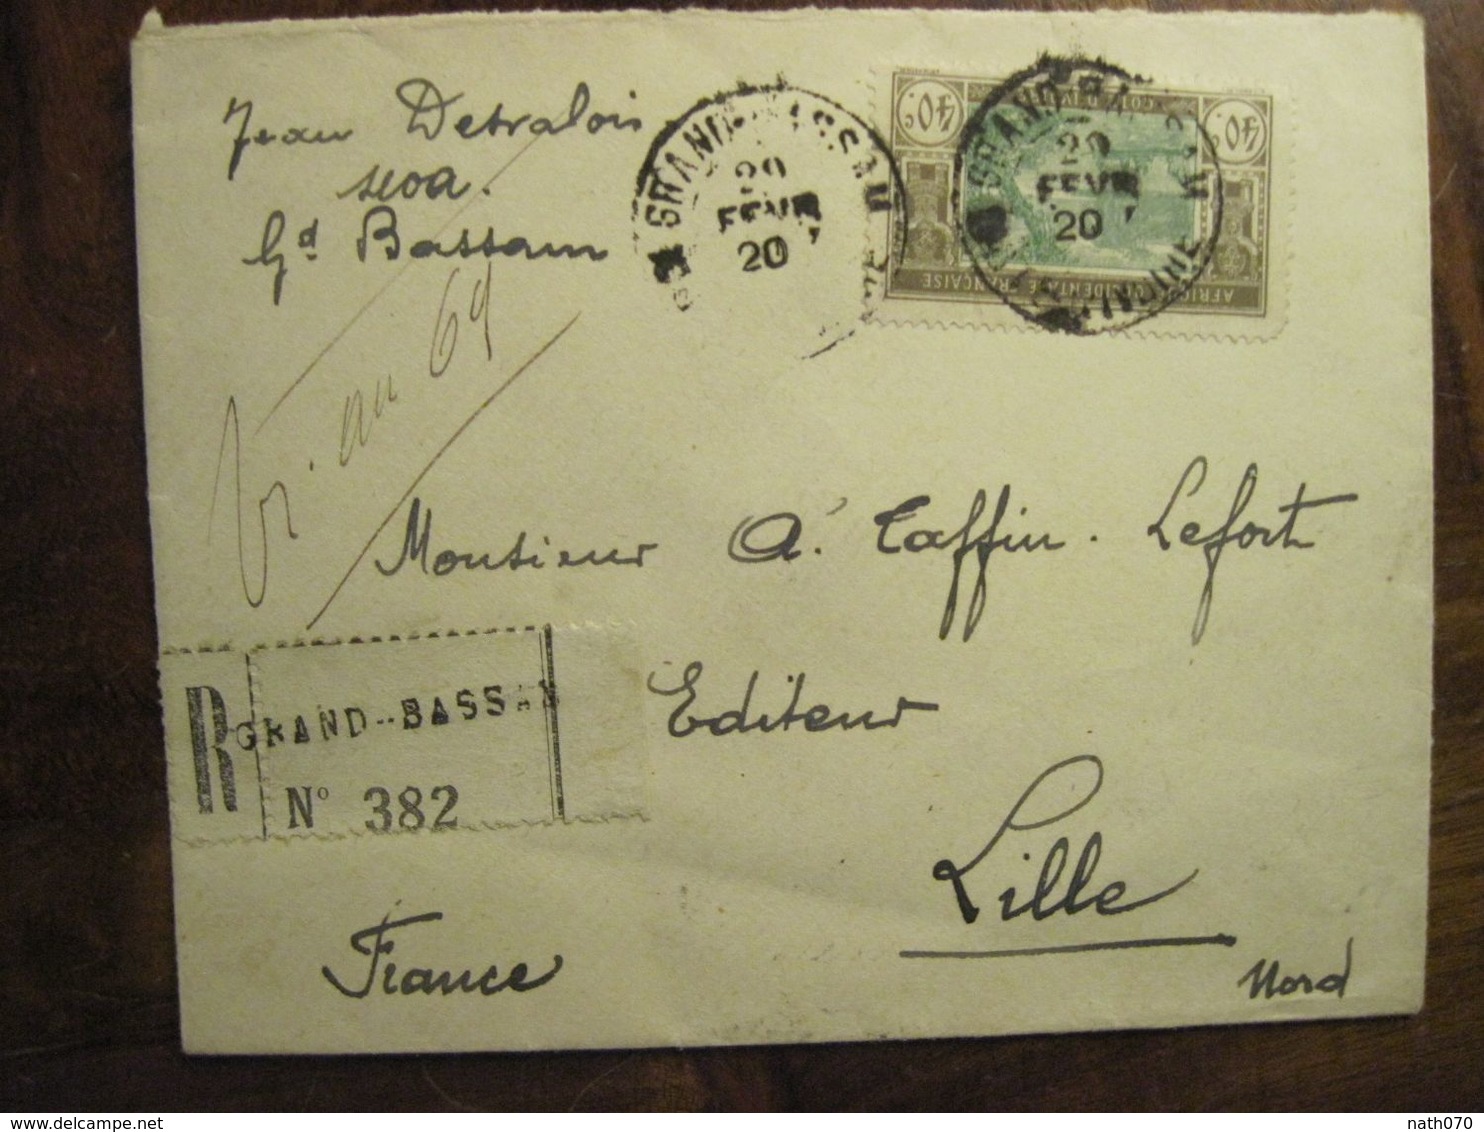 Cote D'Ivoire 1920 France Grand Bassam Lettre Enveloppe Cover Colonie Recommandé Reco AOF Taffin Lefort - Storia Postale